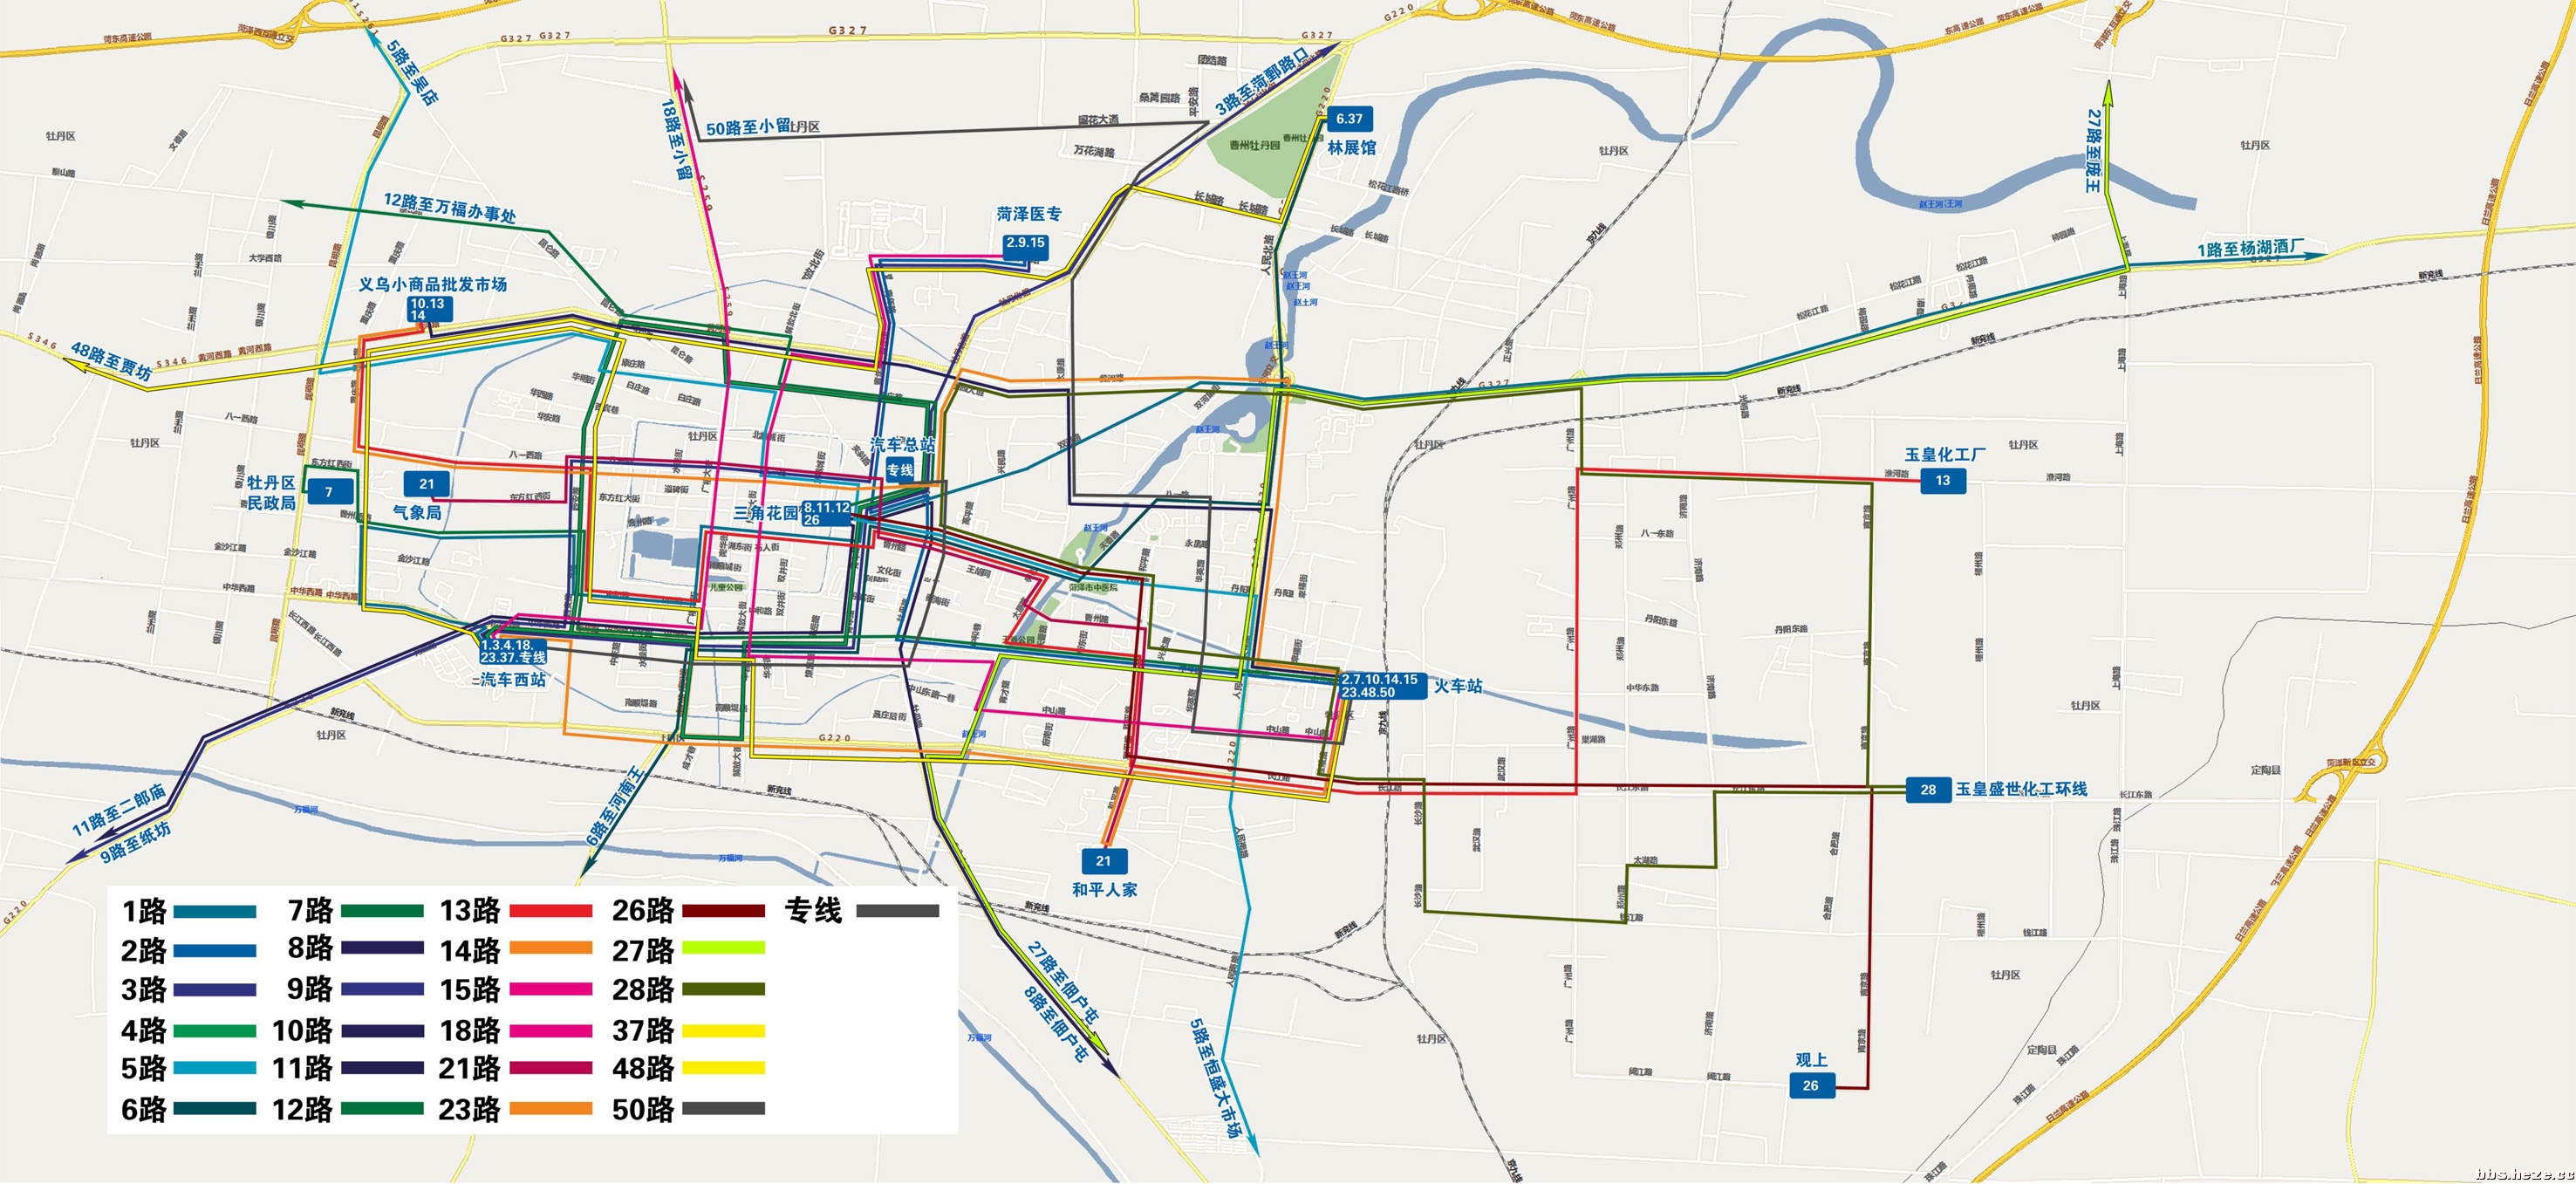 菏泽66路是菏泽市公共汽车公司的牡丹区线路,菏泽66路公交车路线从图片